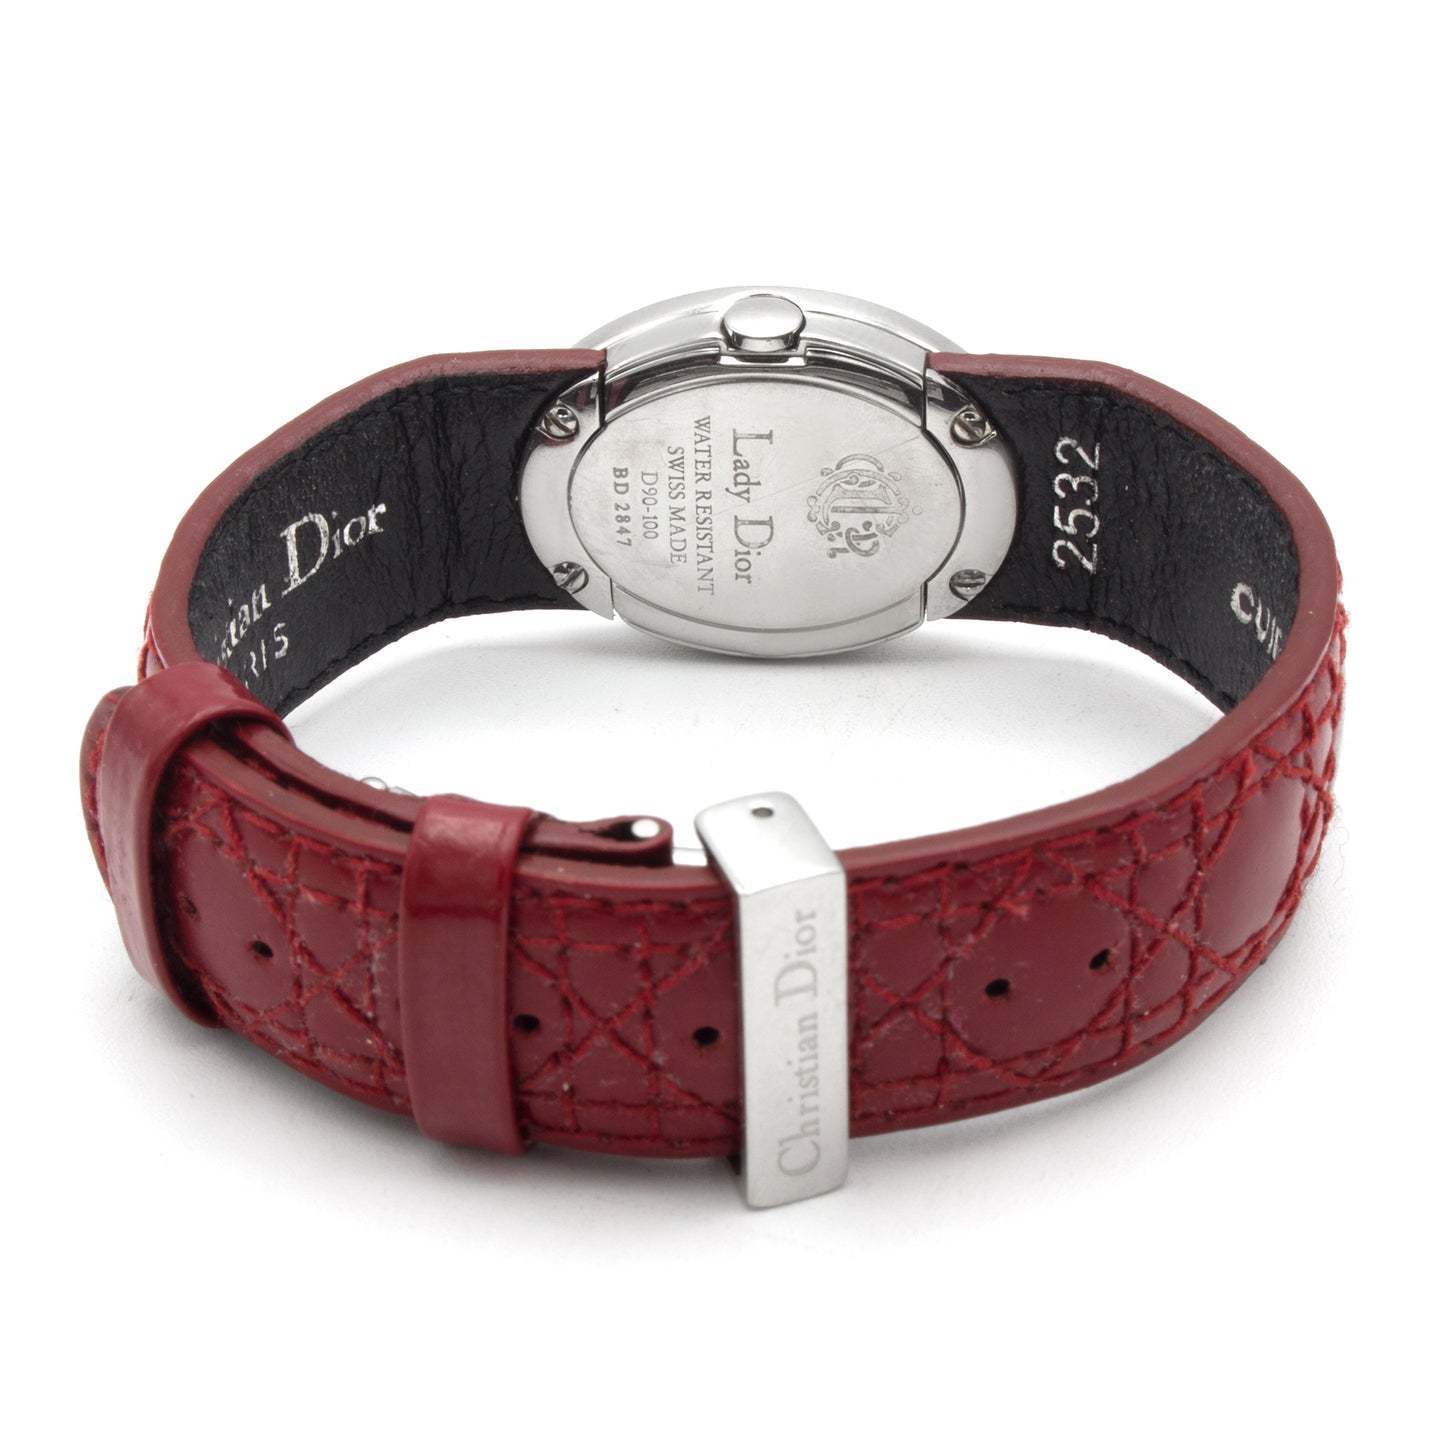 Dior D90-100 watch